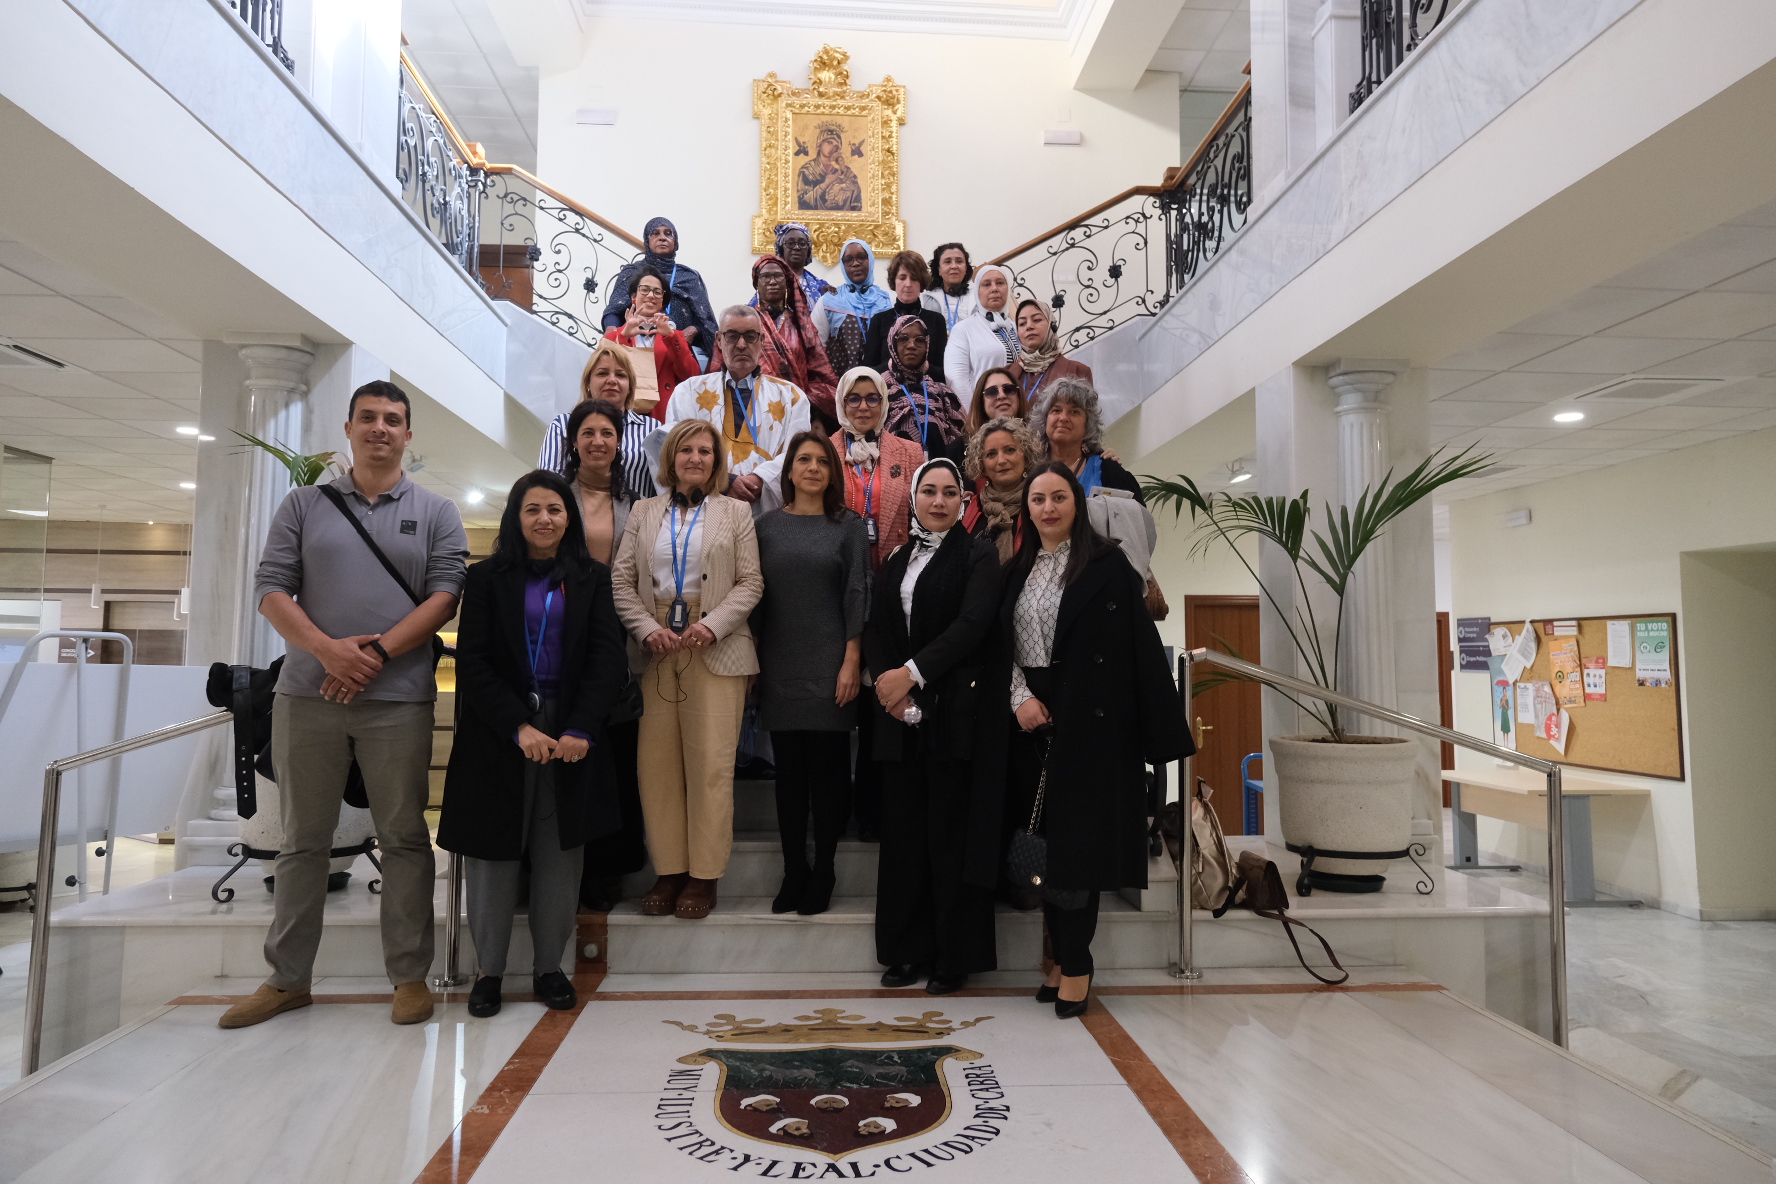 Delegadas políticas de Marruecos, Mauritania y Túnez visitan Cabra para aprender sobre igualdad de género.